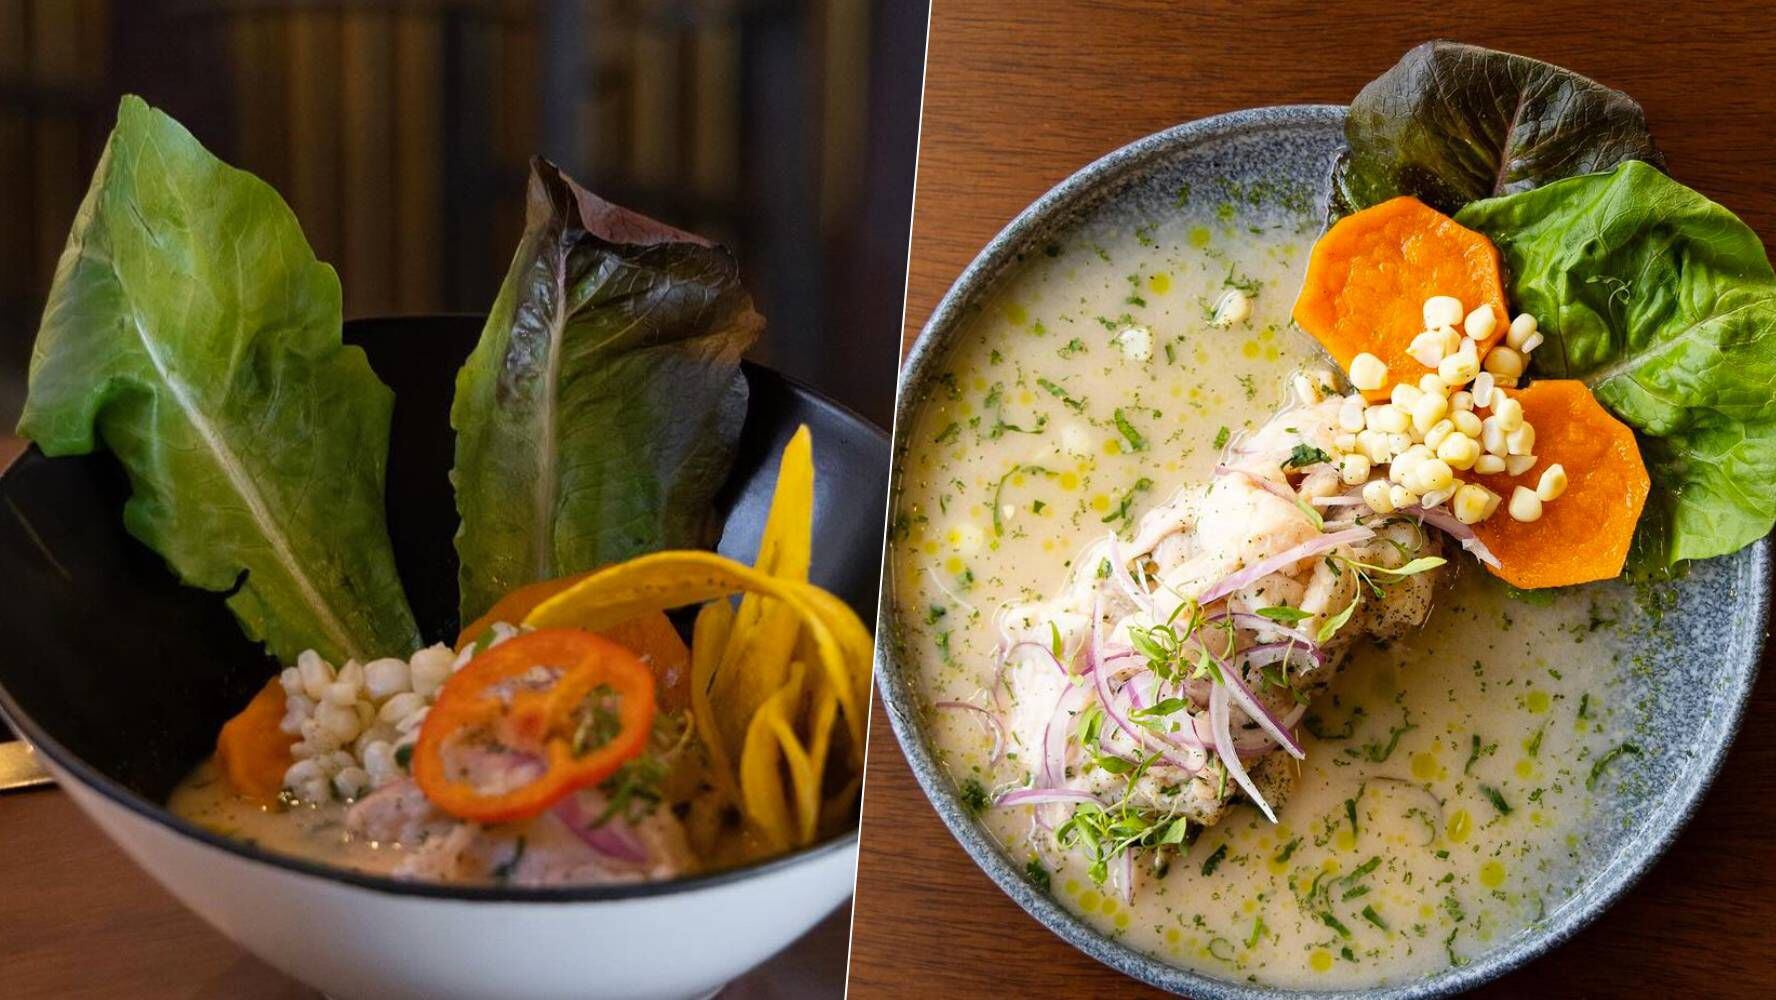 El restaurante de Nicola Porcella sirve ceviche peruano y lomo saltado. (Foto: Instagram / @taypa.restaurante).